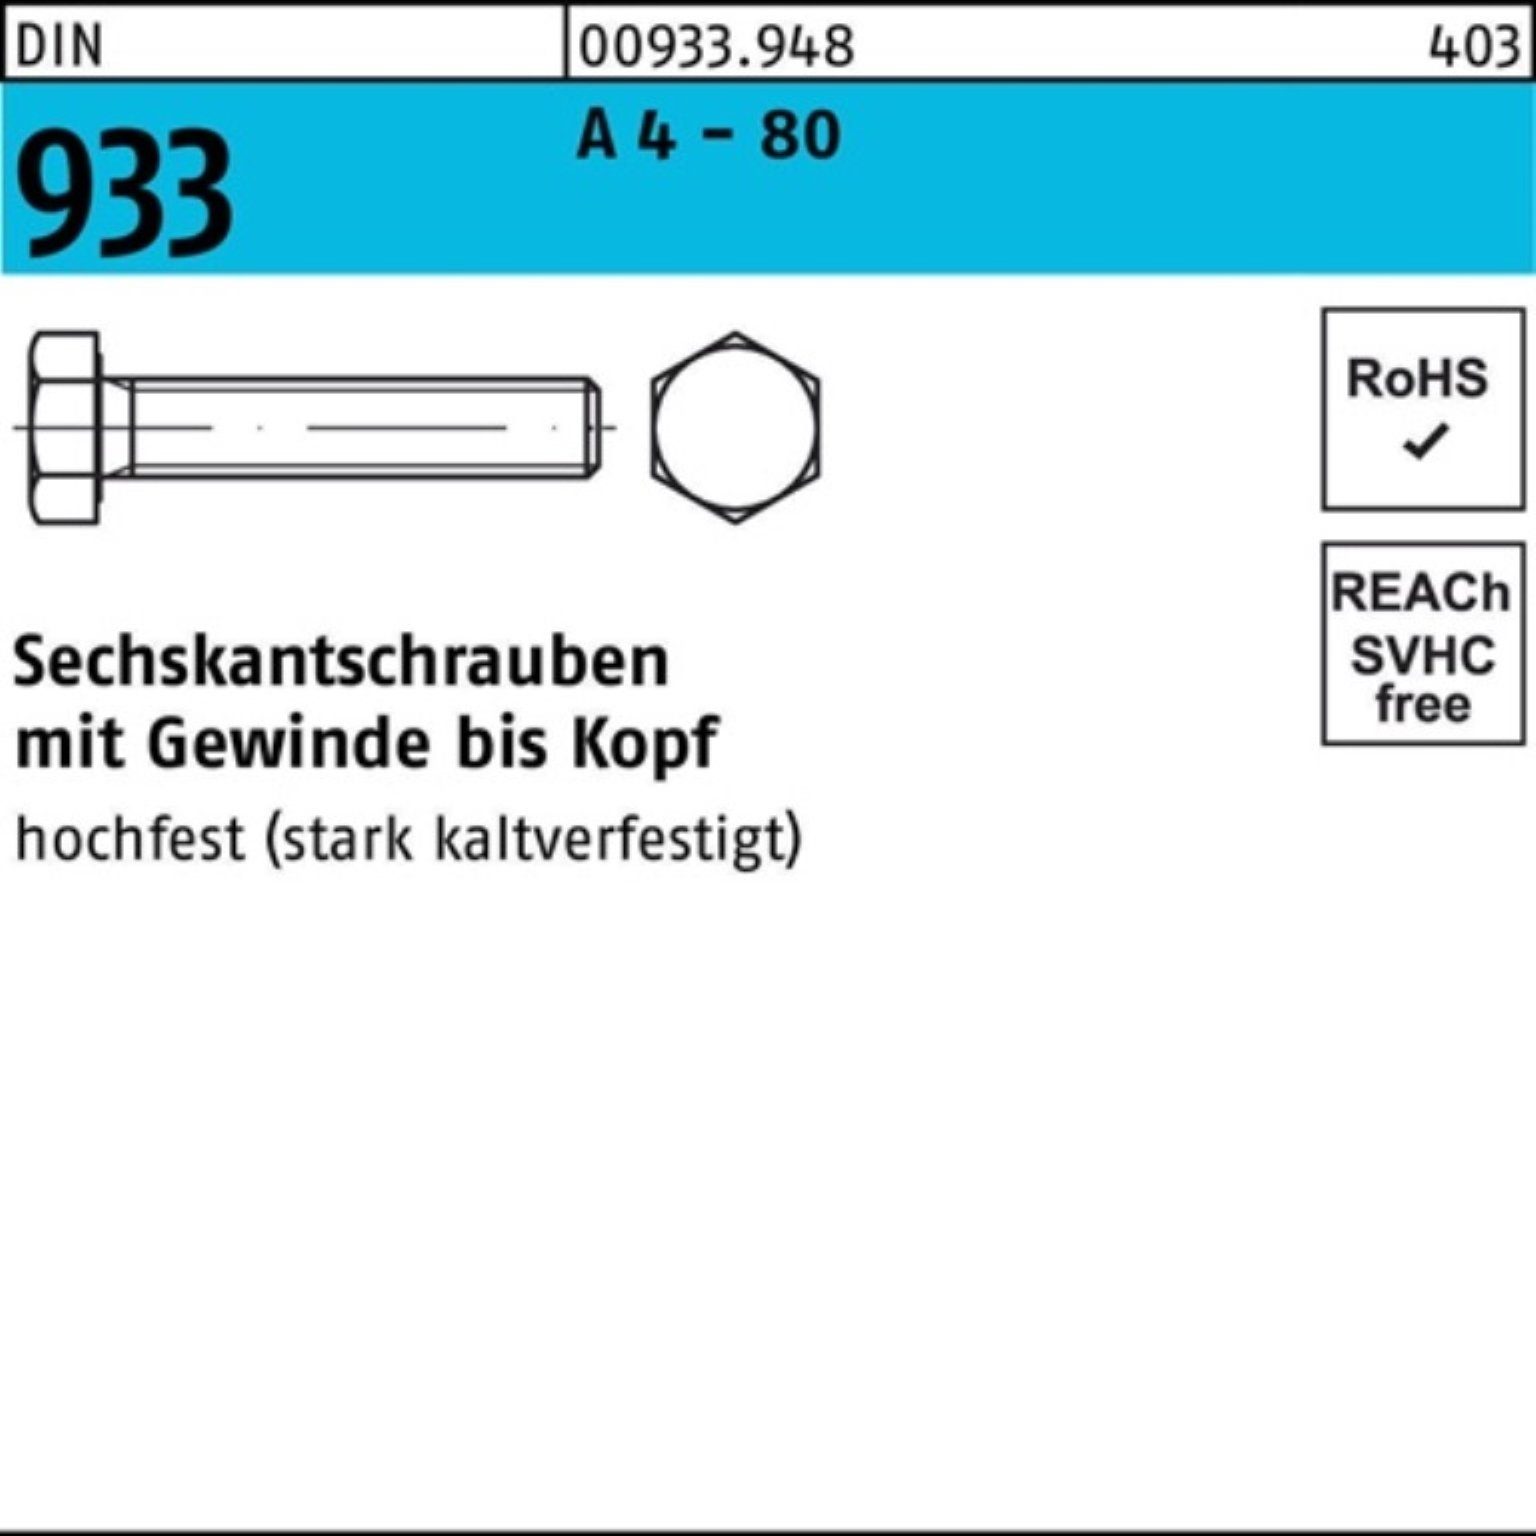 Reyher Sechskantschraube 100er Pack Sechskantschraube DIN 933 VG M6x 16 A 4 - 80 100 Stück DIN